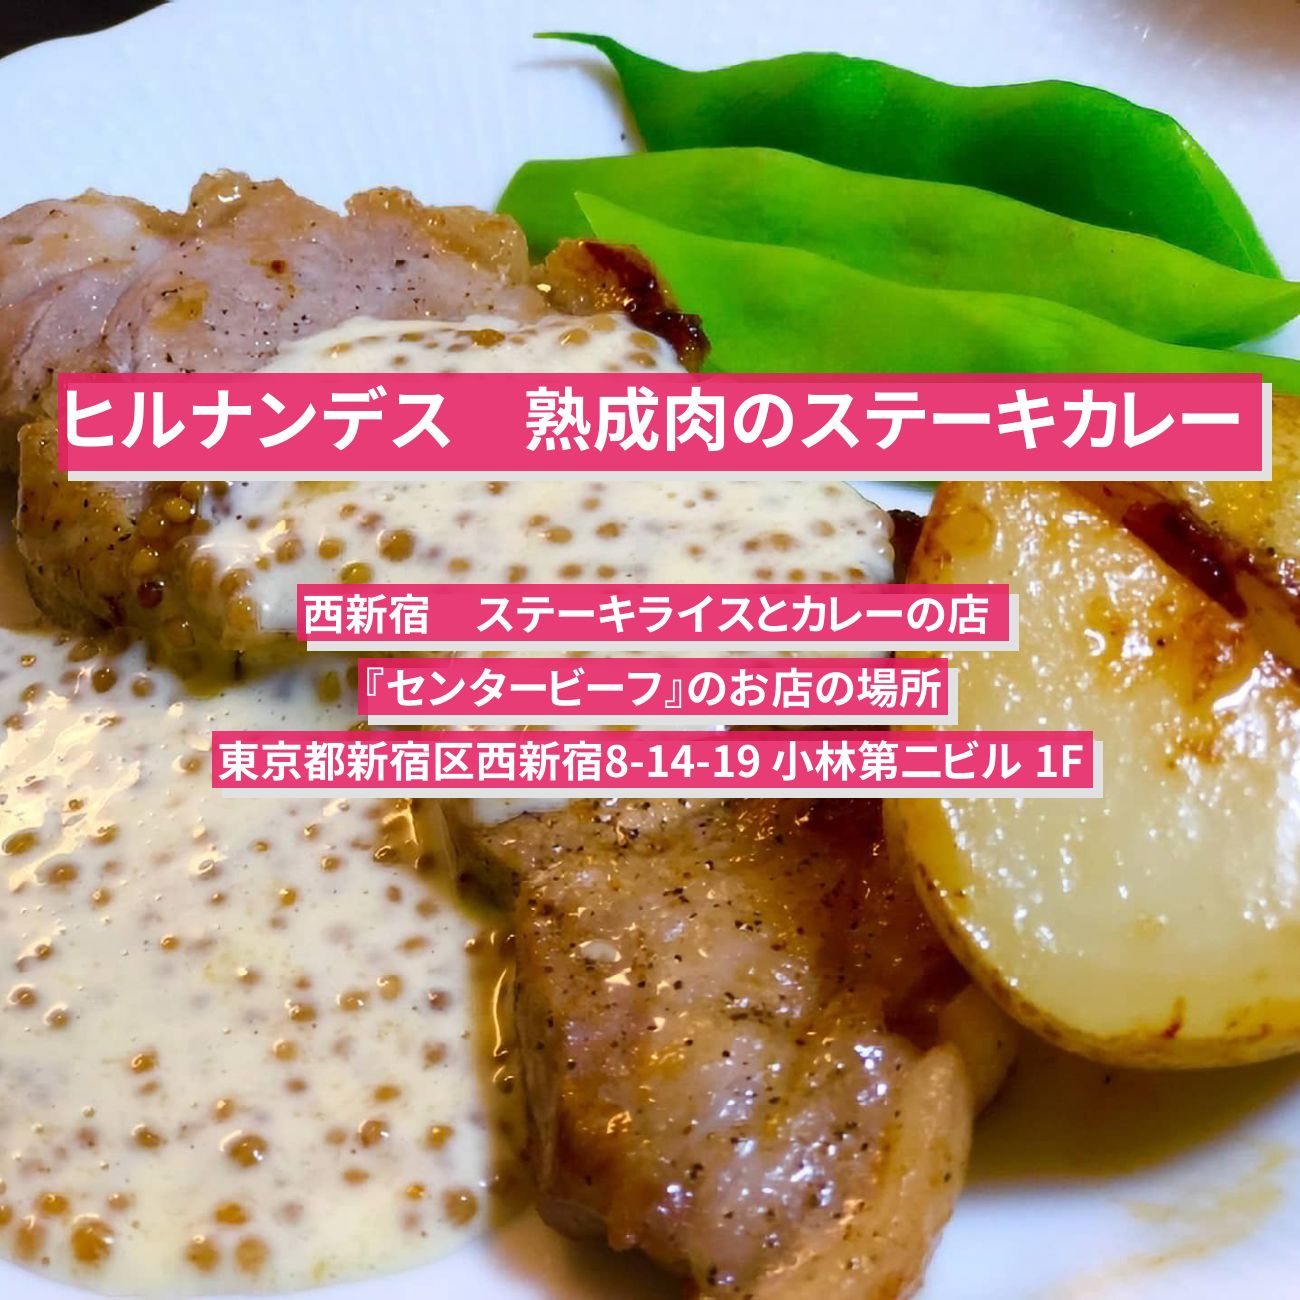 【ヒルナンデス】熟成肉のステーキライス（カレー）西新宿『ステーキライスとカレーの店 センタービーフ』のお店の場所